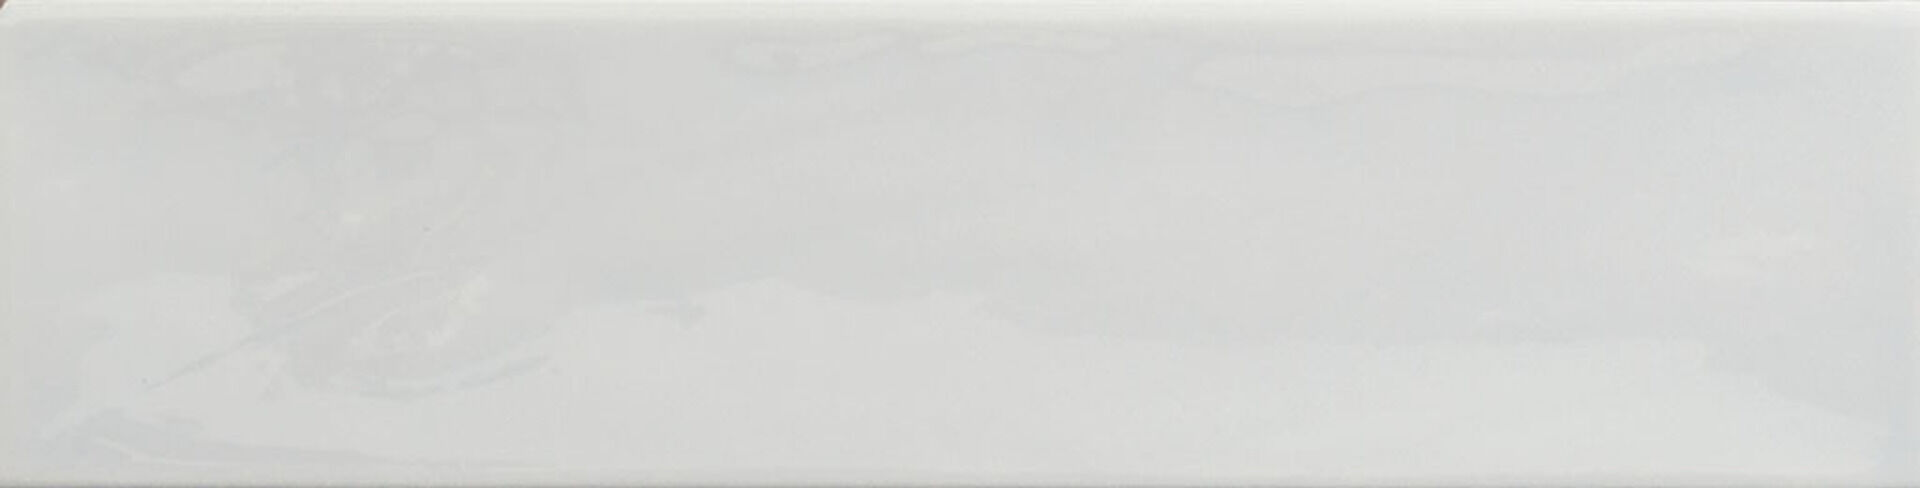 Керамическая плитка KANE WHITE 7,5*30 / коллекция KANE / производитель Cifre / страна Испания